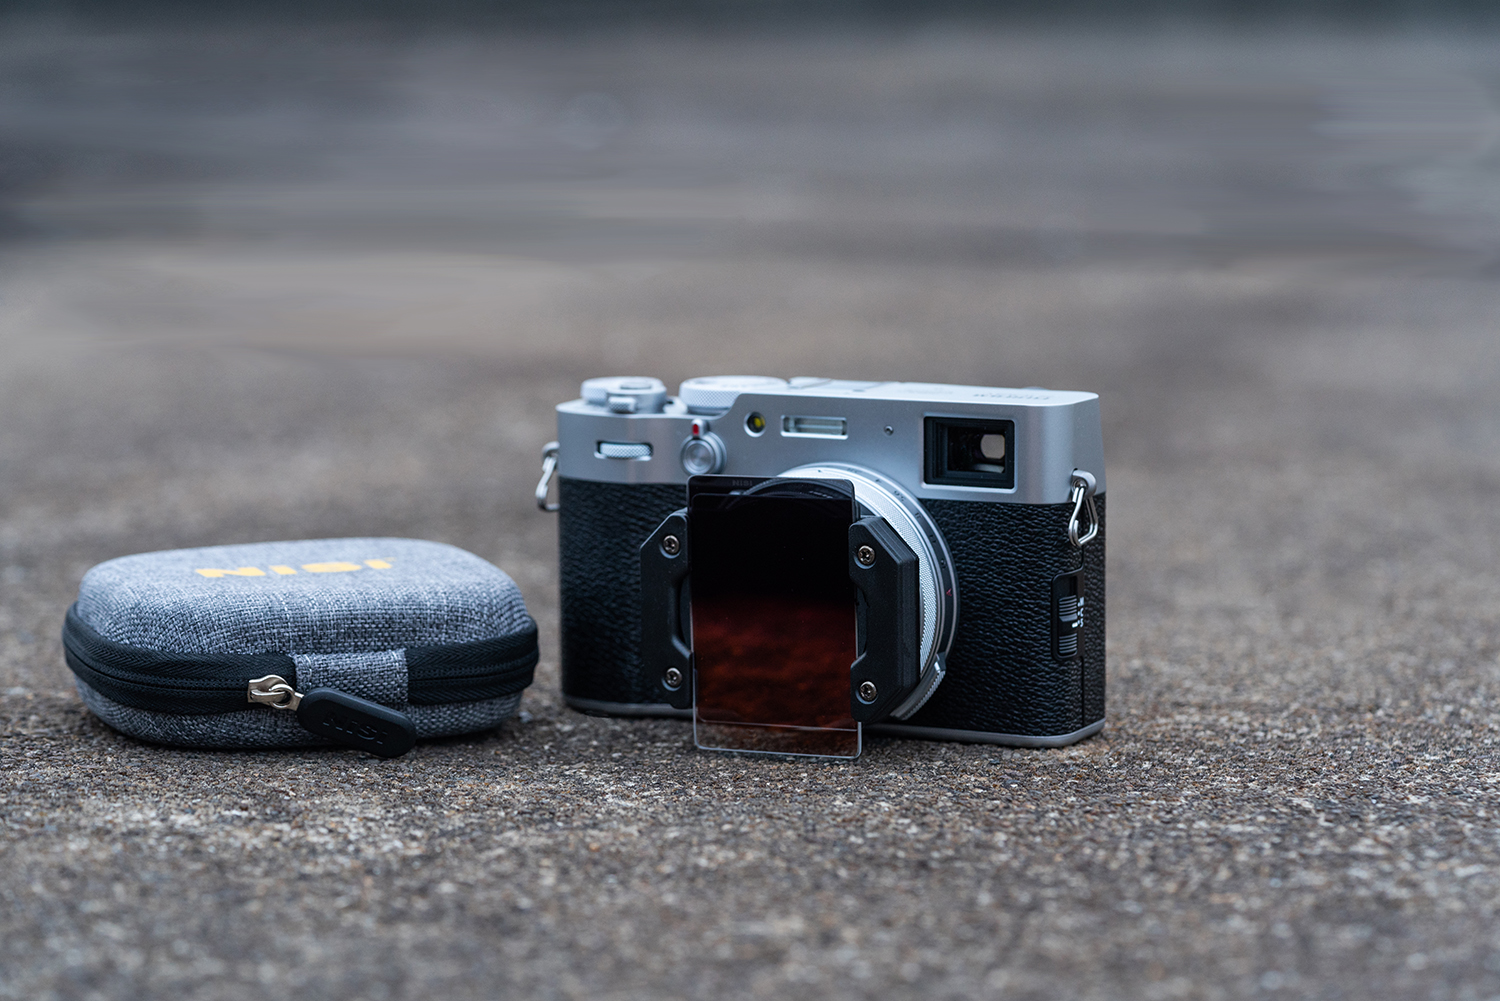 NiSi Filterhalter mit NiSi GND Filter auf Fujifilm X100 Kompaktkamera in Silber, daneben NiSi Kompaktfilter Caddy Lifestyle Bild